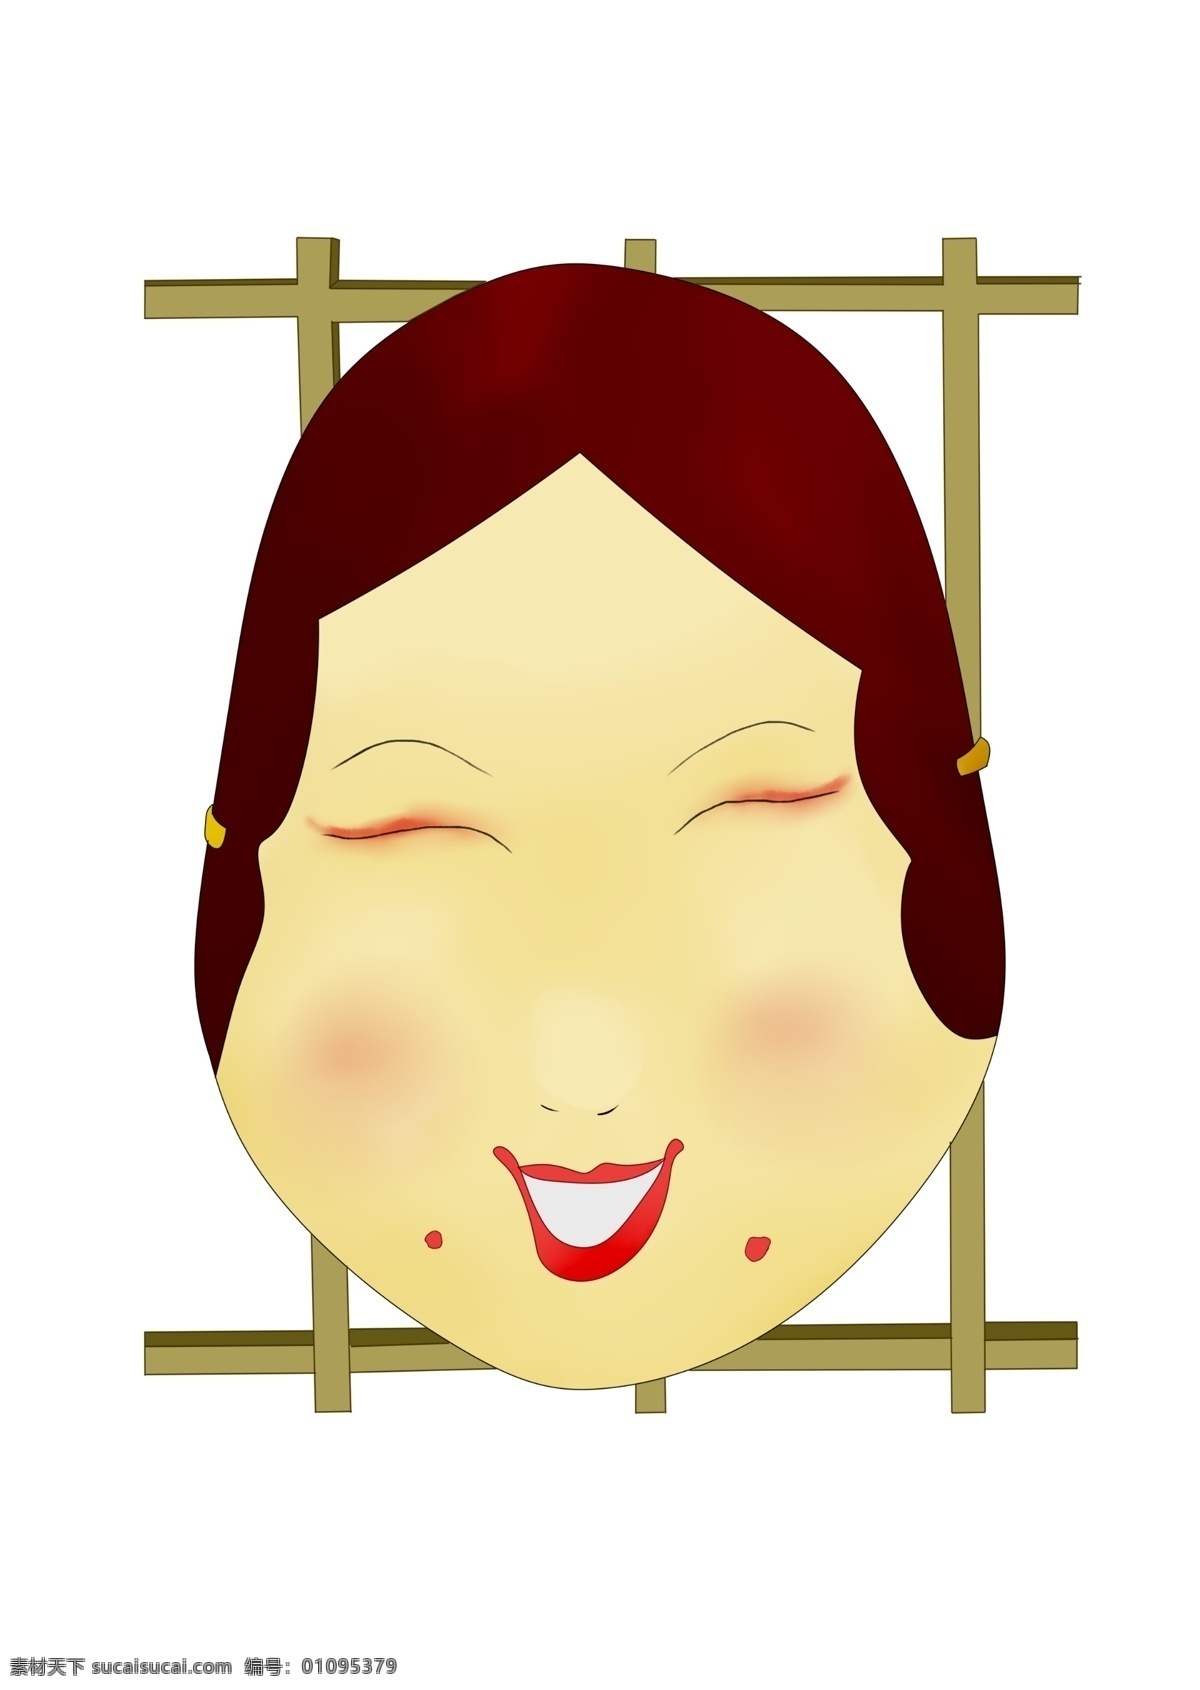 日本 特色 面具 插画 卡通面具 日本文化 日本特色 卡通面具插画 人脸面具 创意面具插画 日本面具